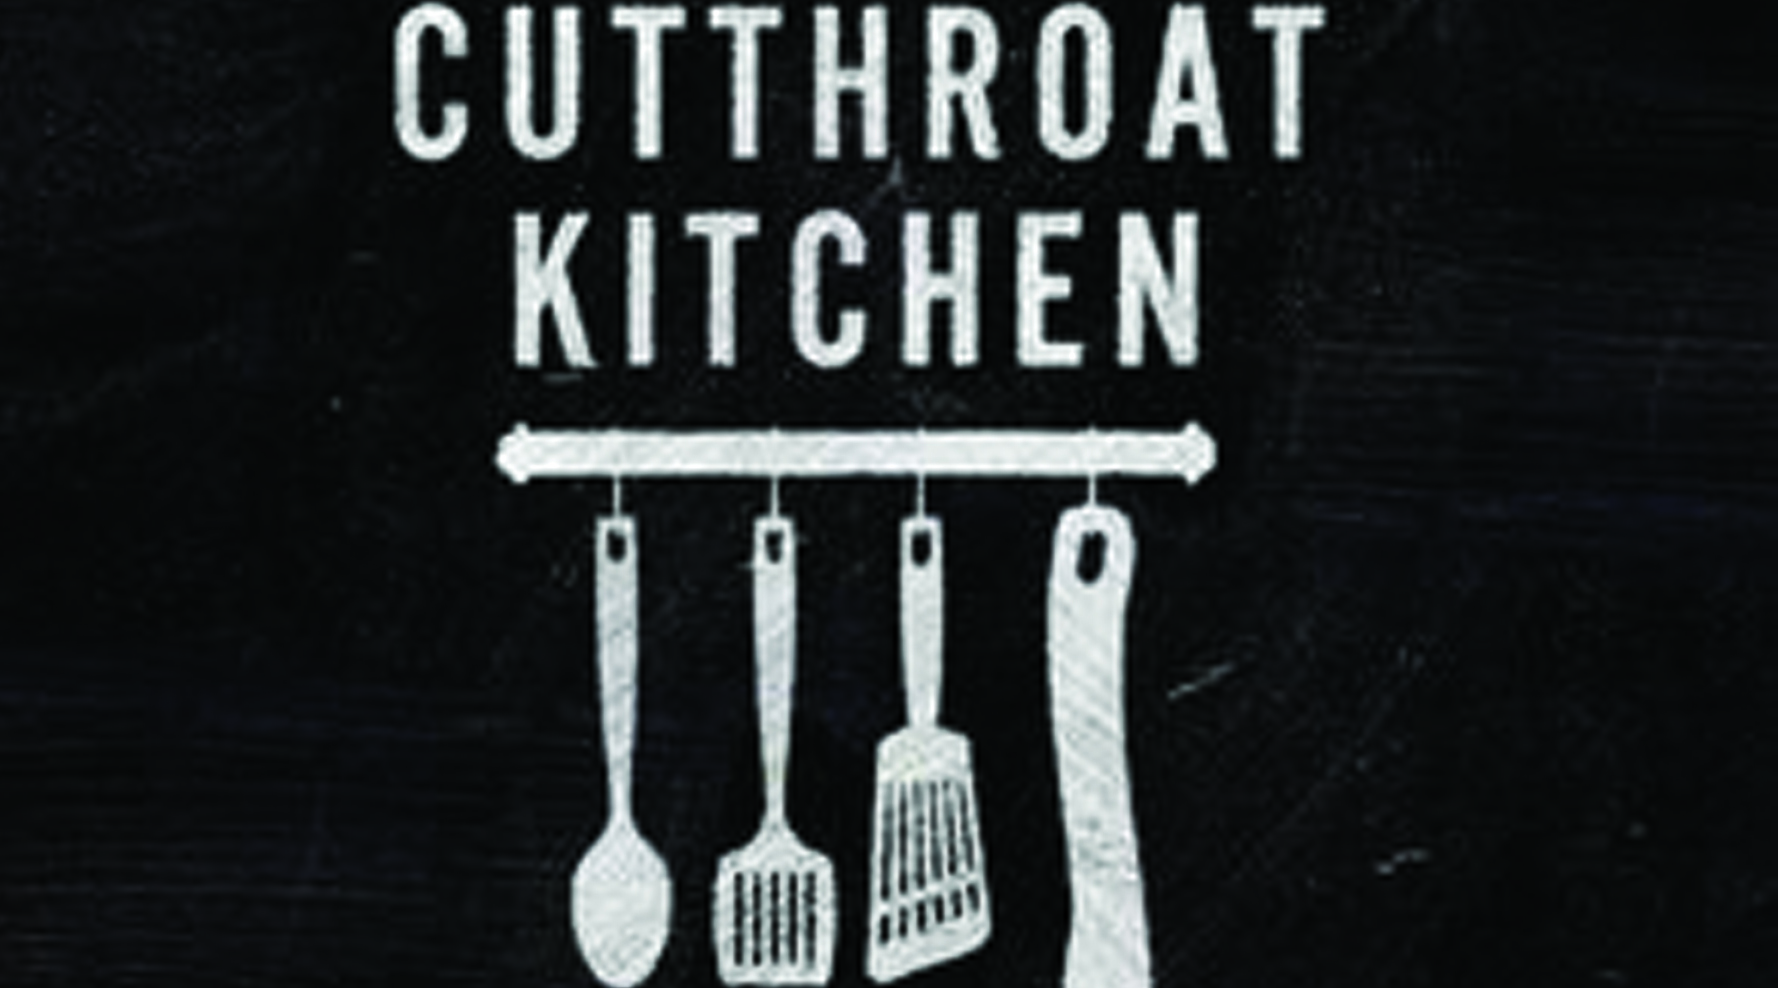 cutthroat kitchen spreader bar